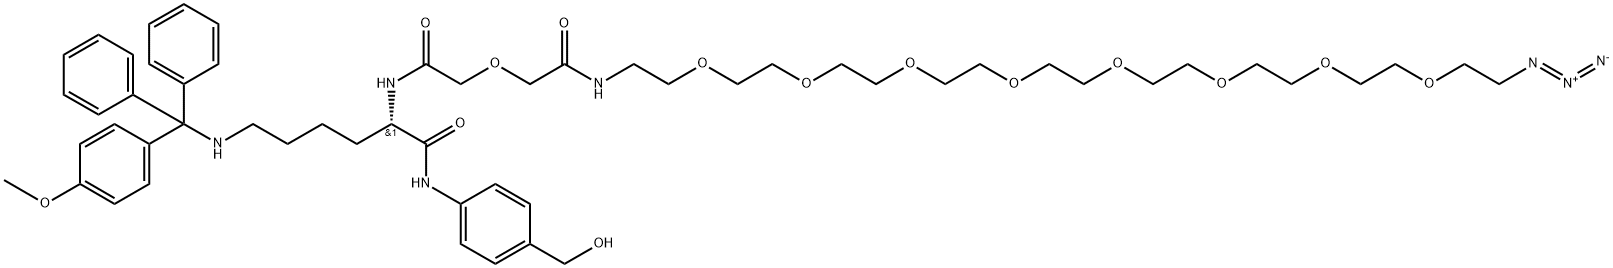 (S)-2-(32-azido-5-oxo-3,9,12,15,18,21,24,27,30-nonaoxa-6-azadotriacontanamido)-N-(4-(hydroxymethyl)phenyl)-6-(((4-methoxyphenyl)diphenylmethyl)amino)hexanamide|(S)-2-(32-AZIDO-5-OXO-3,9,12,15,18,21,24,27,30-NONAOXA-6-AZADOTRIACONTANAMIDO)-N-(4-(HYDROXYMETHYL)P